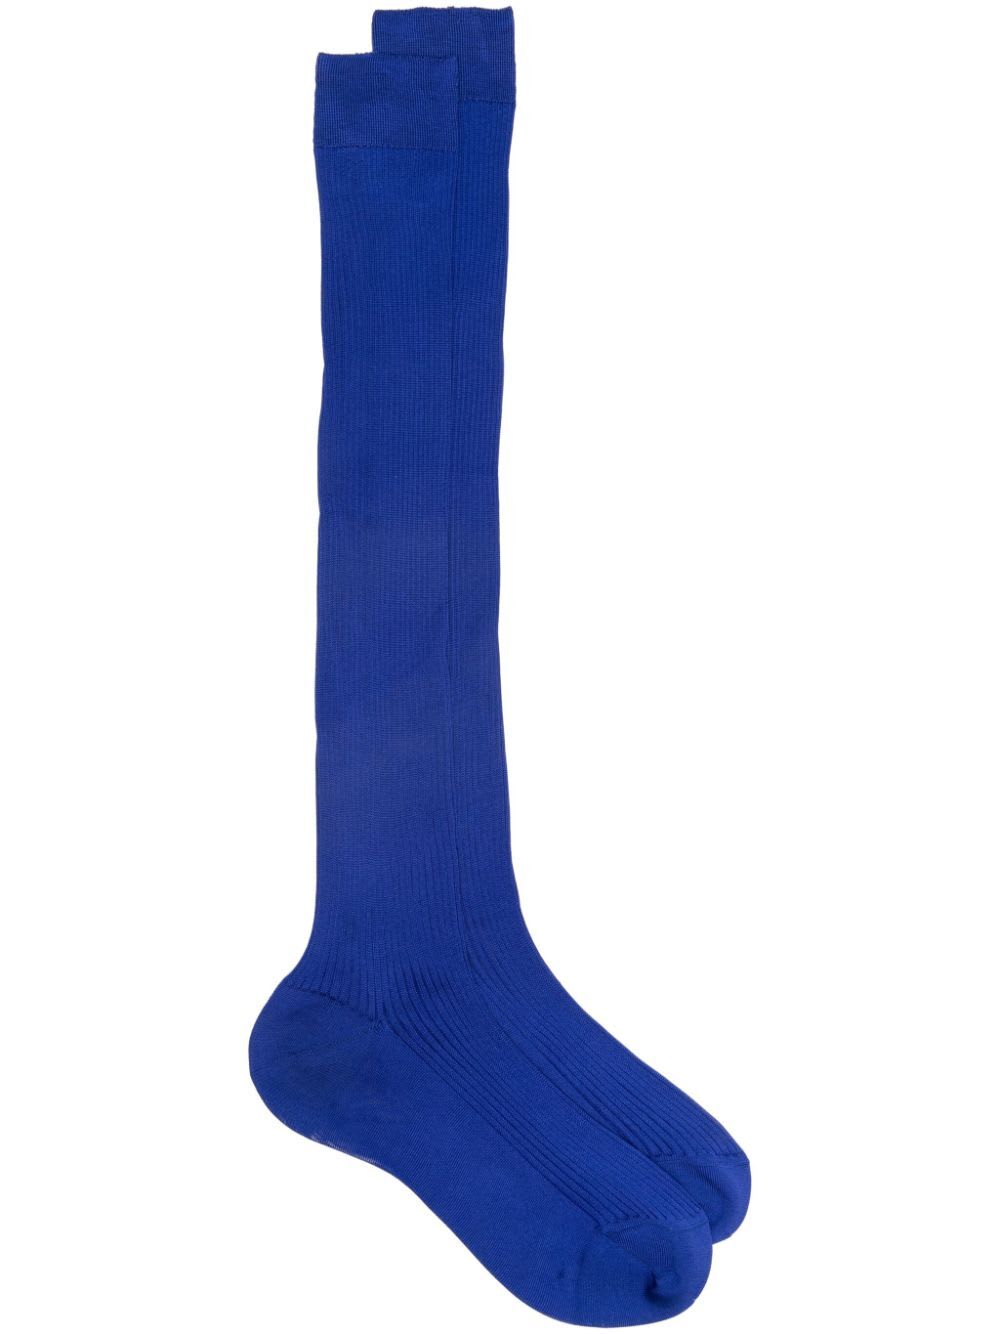 Maria La Rosa Wg013un4008 Socks In Cobalto